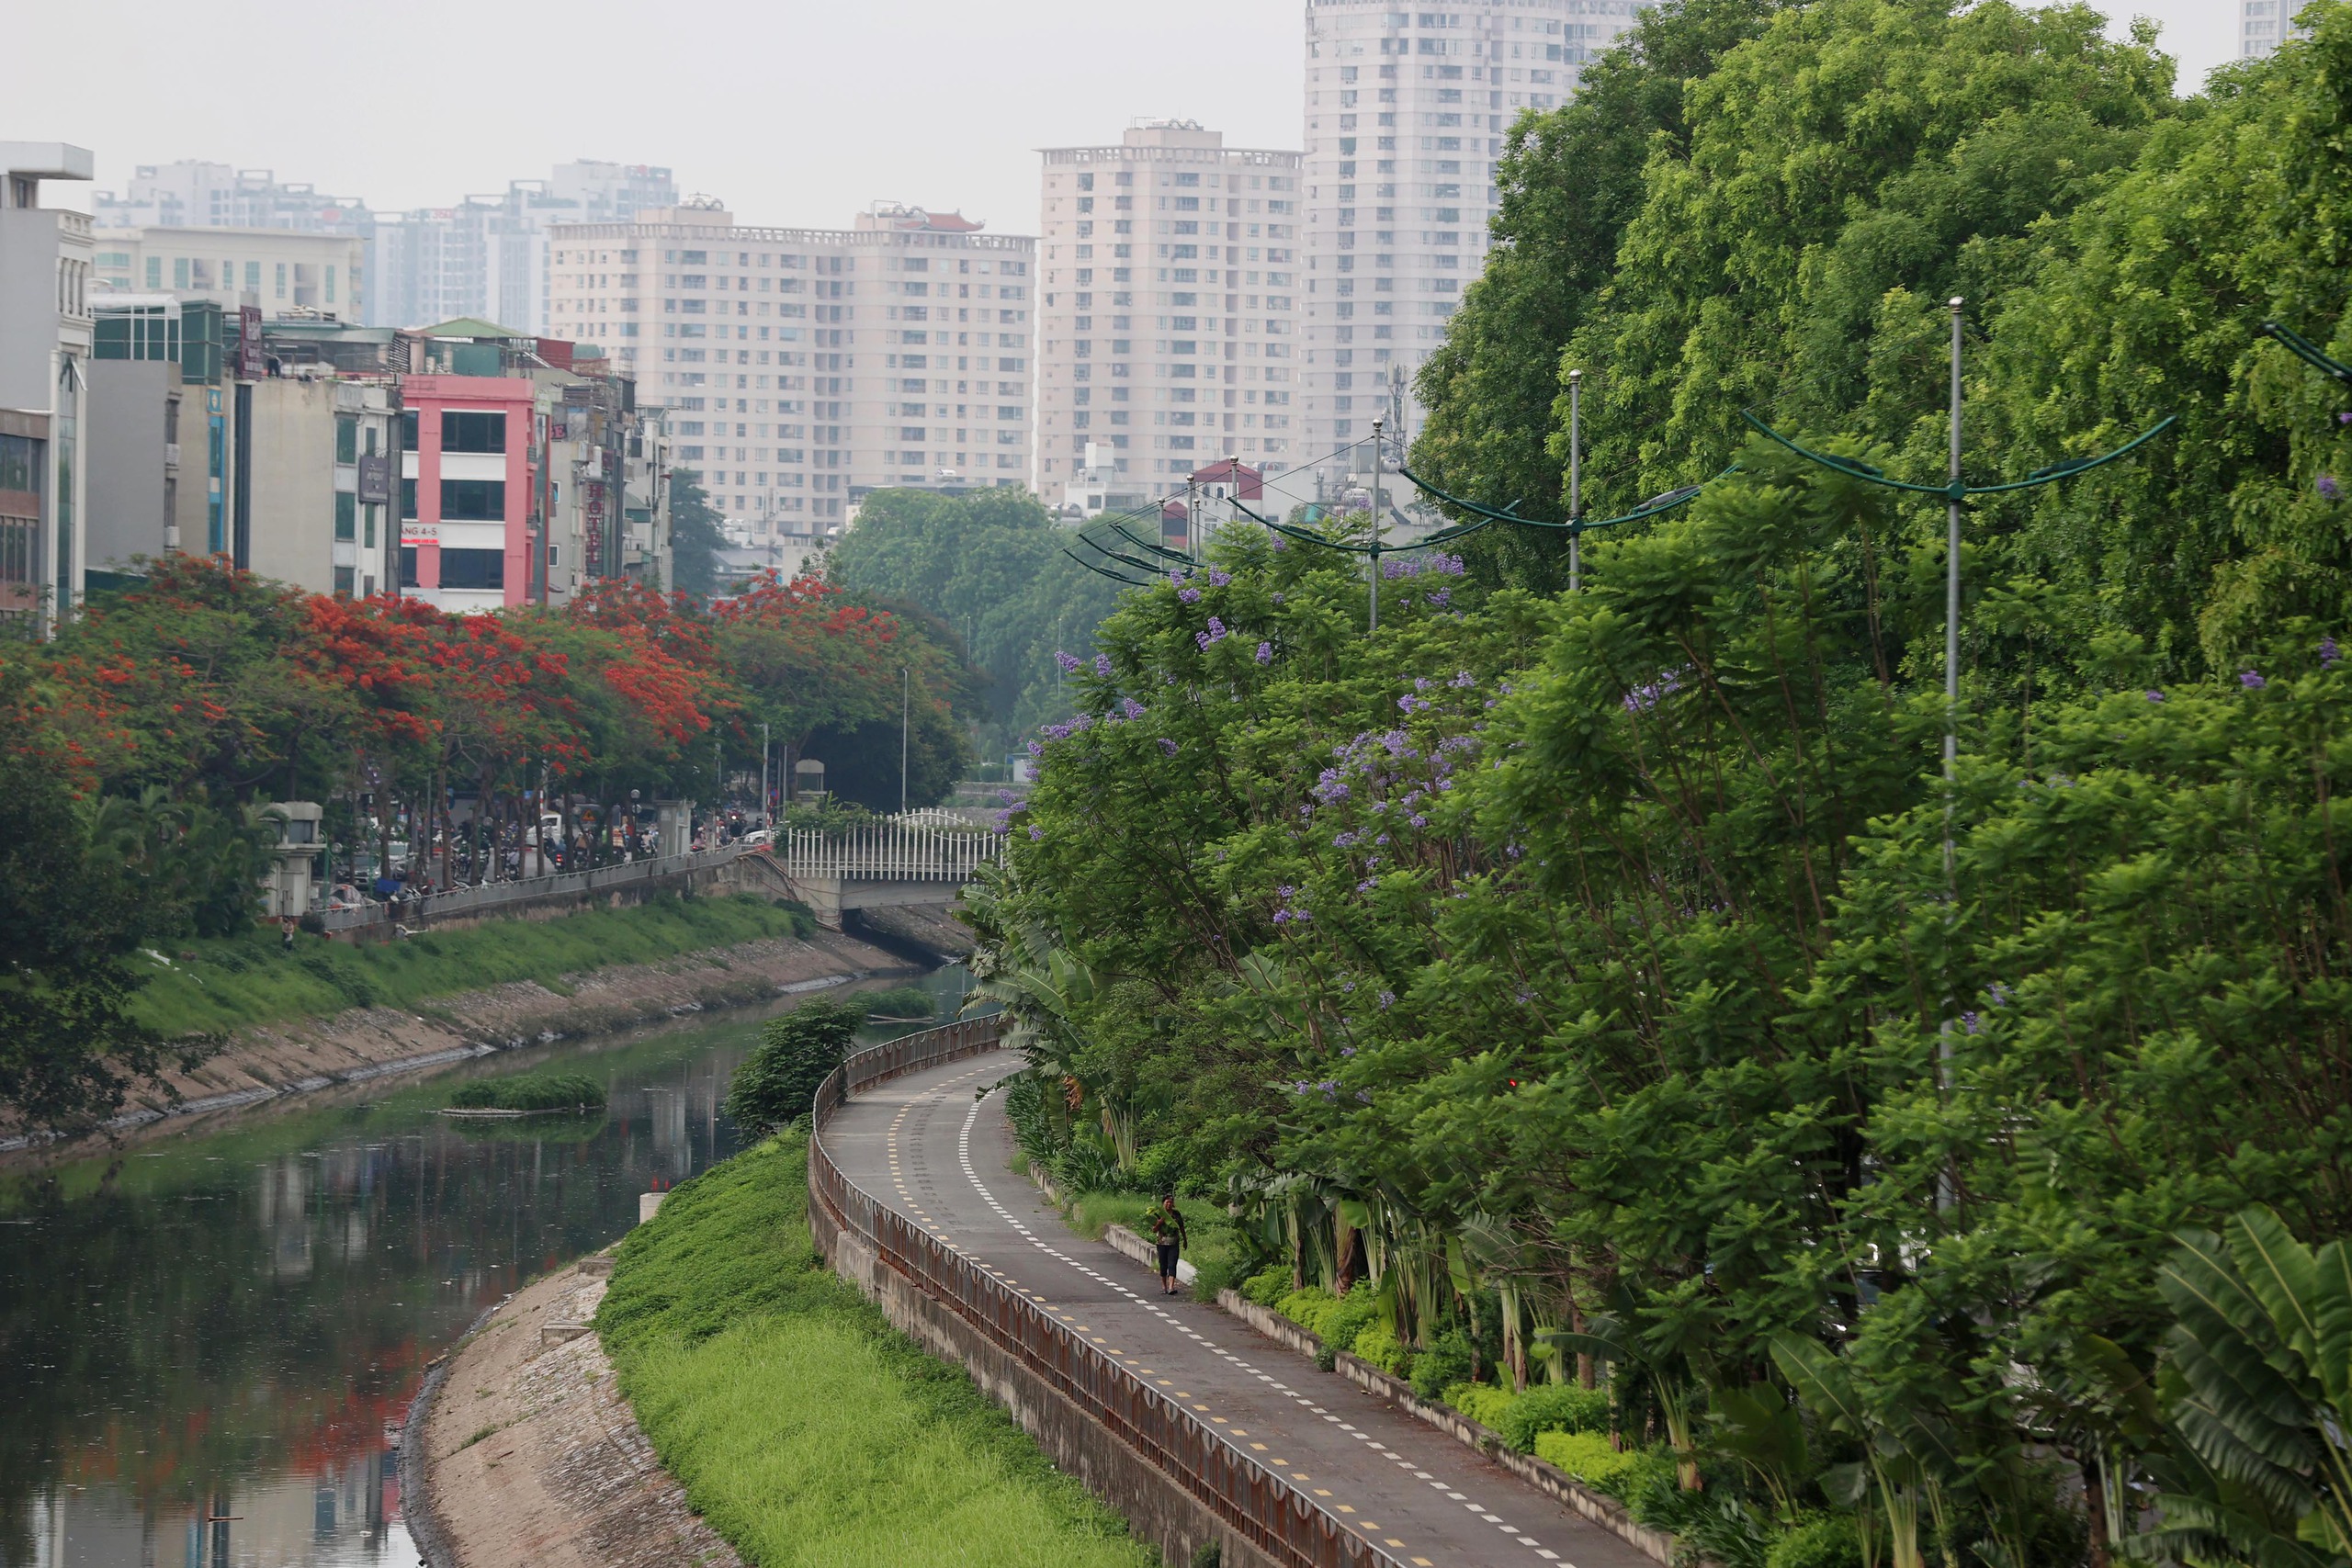 Hình ảnh thảm cỏ xanh mướt, hút mắt trên con đường chỉ dành riêng cho người đi bộ, xe đạp ở Hà Nội- Ảnh 4.